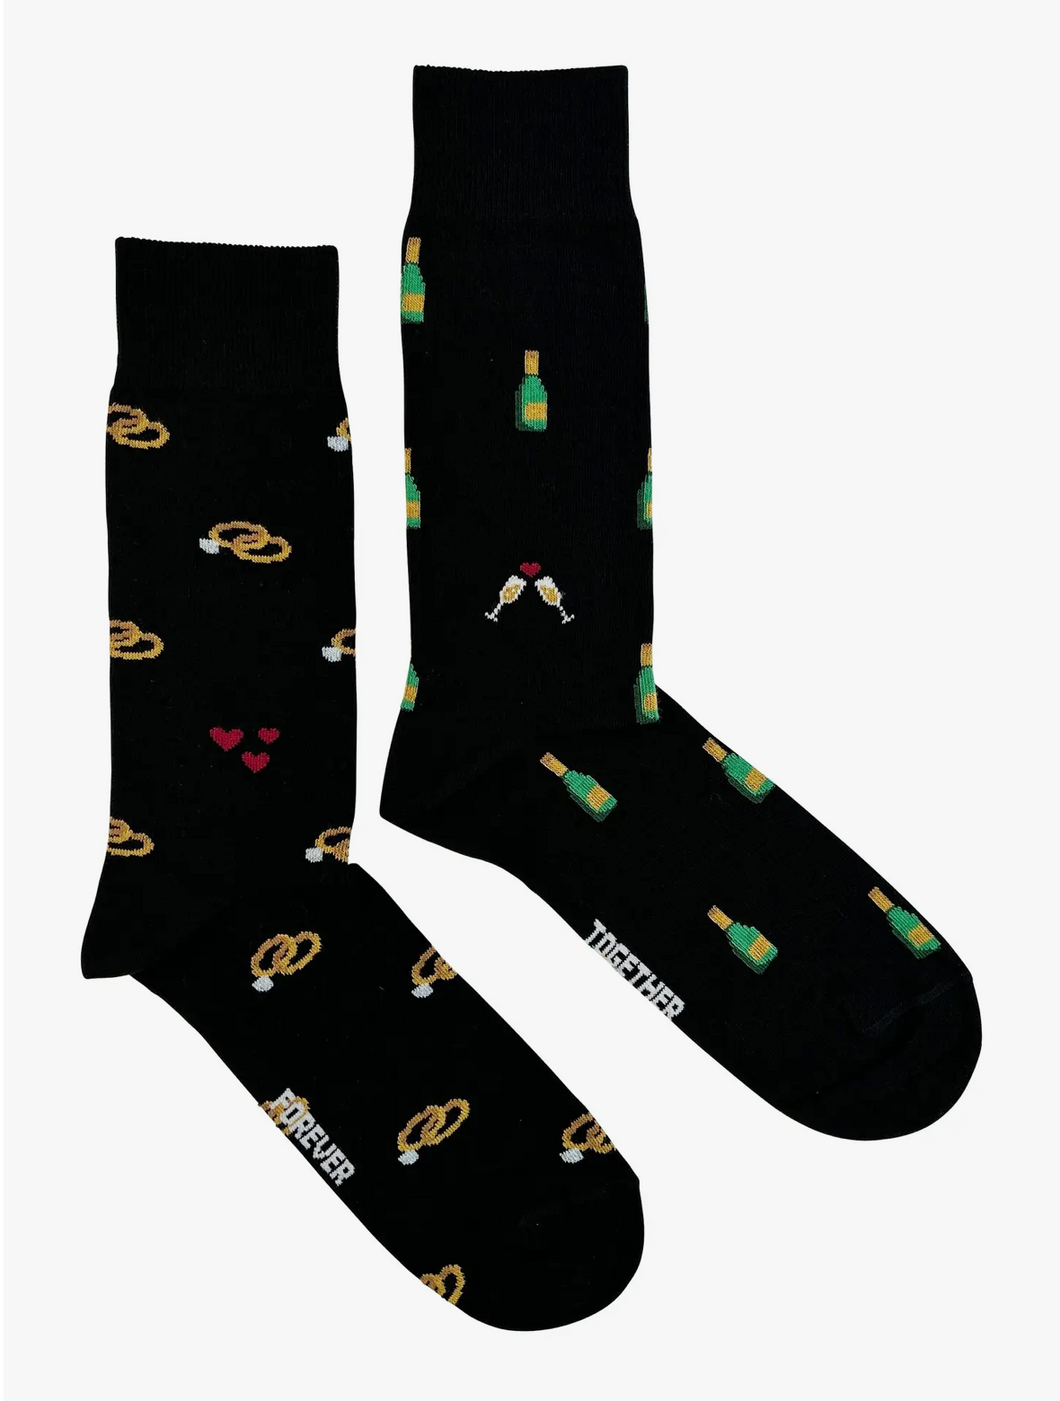 Friday Sock Co. - Men's Wedding Socks